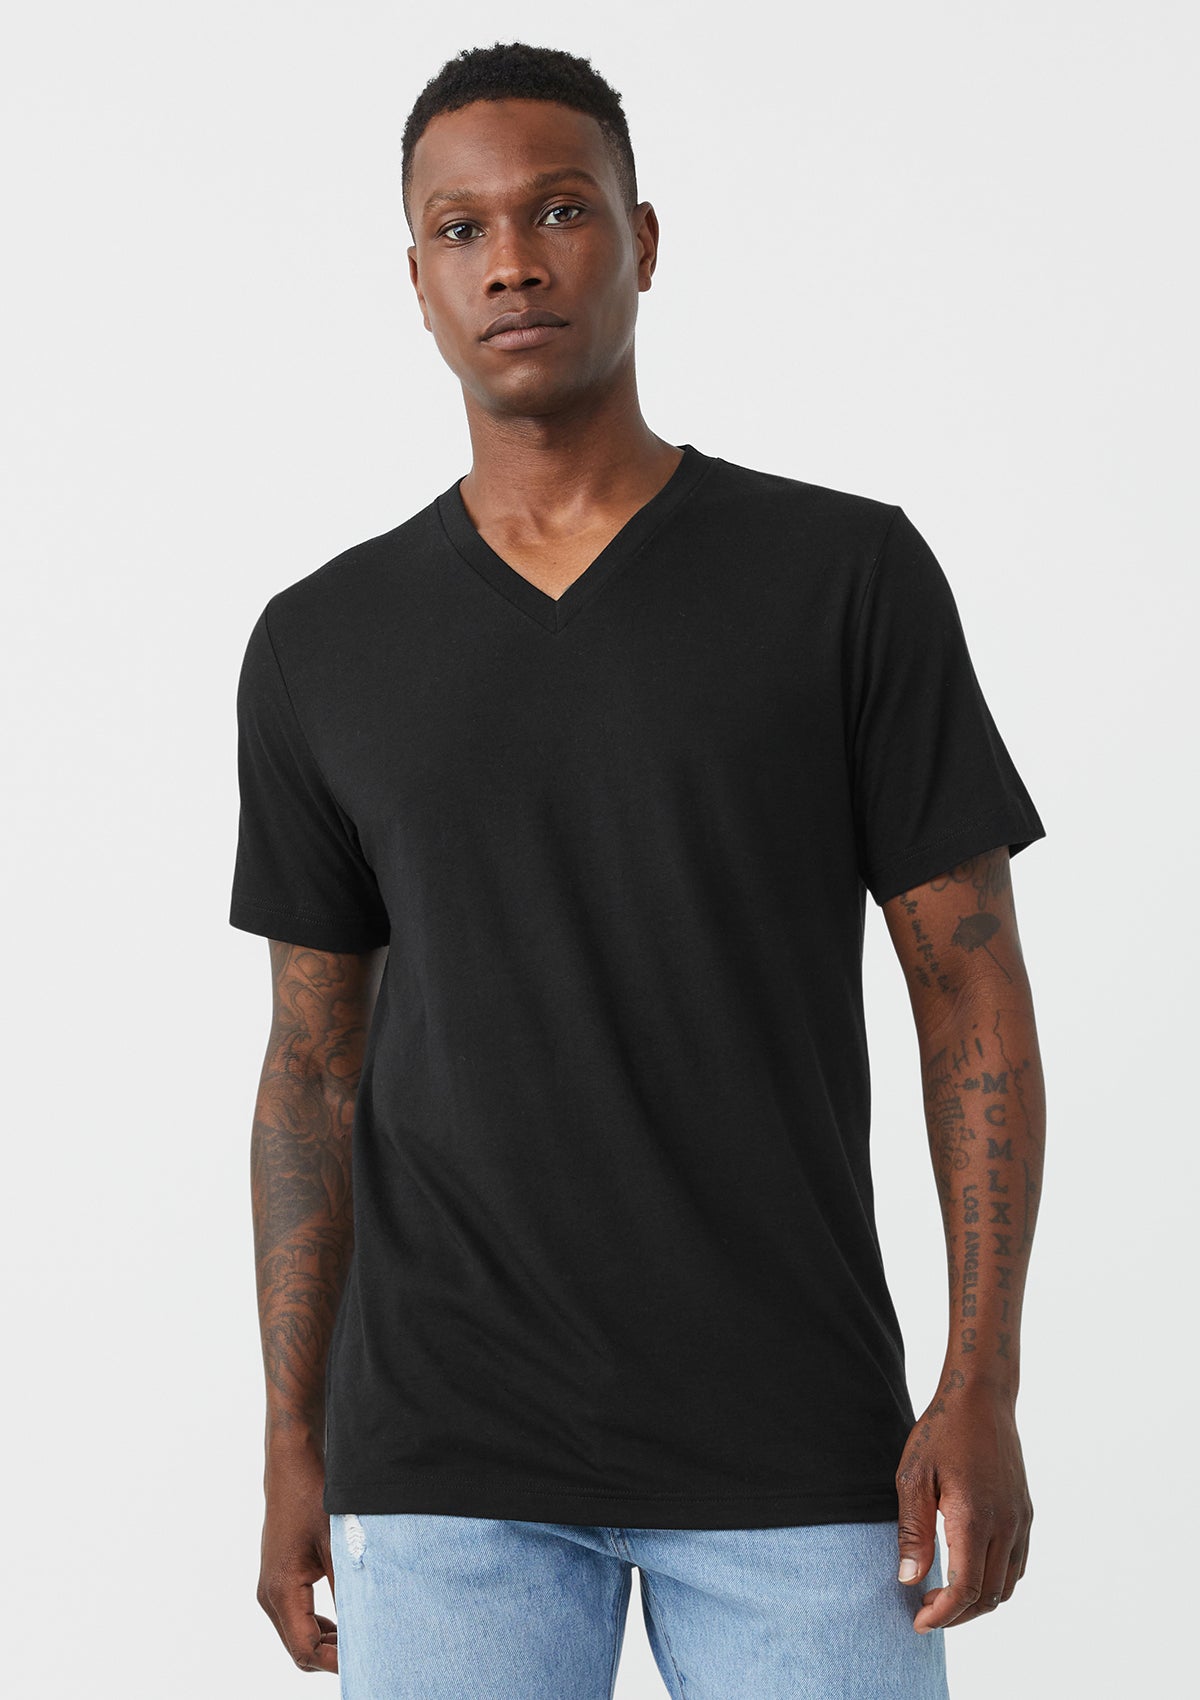 Black V Neck T Shirt for Men